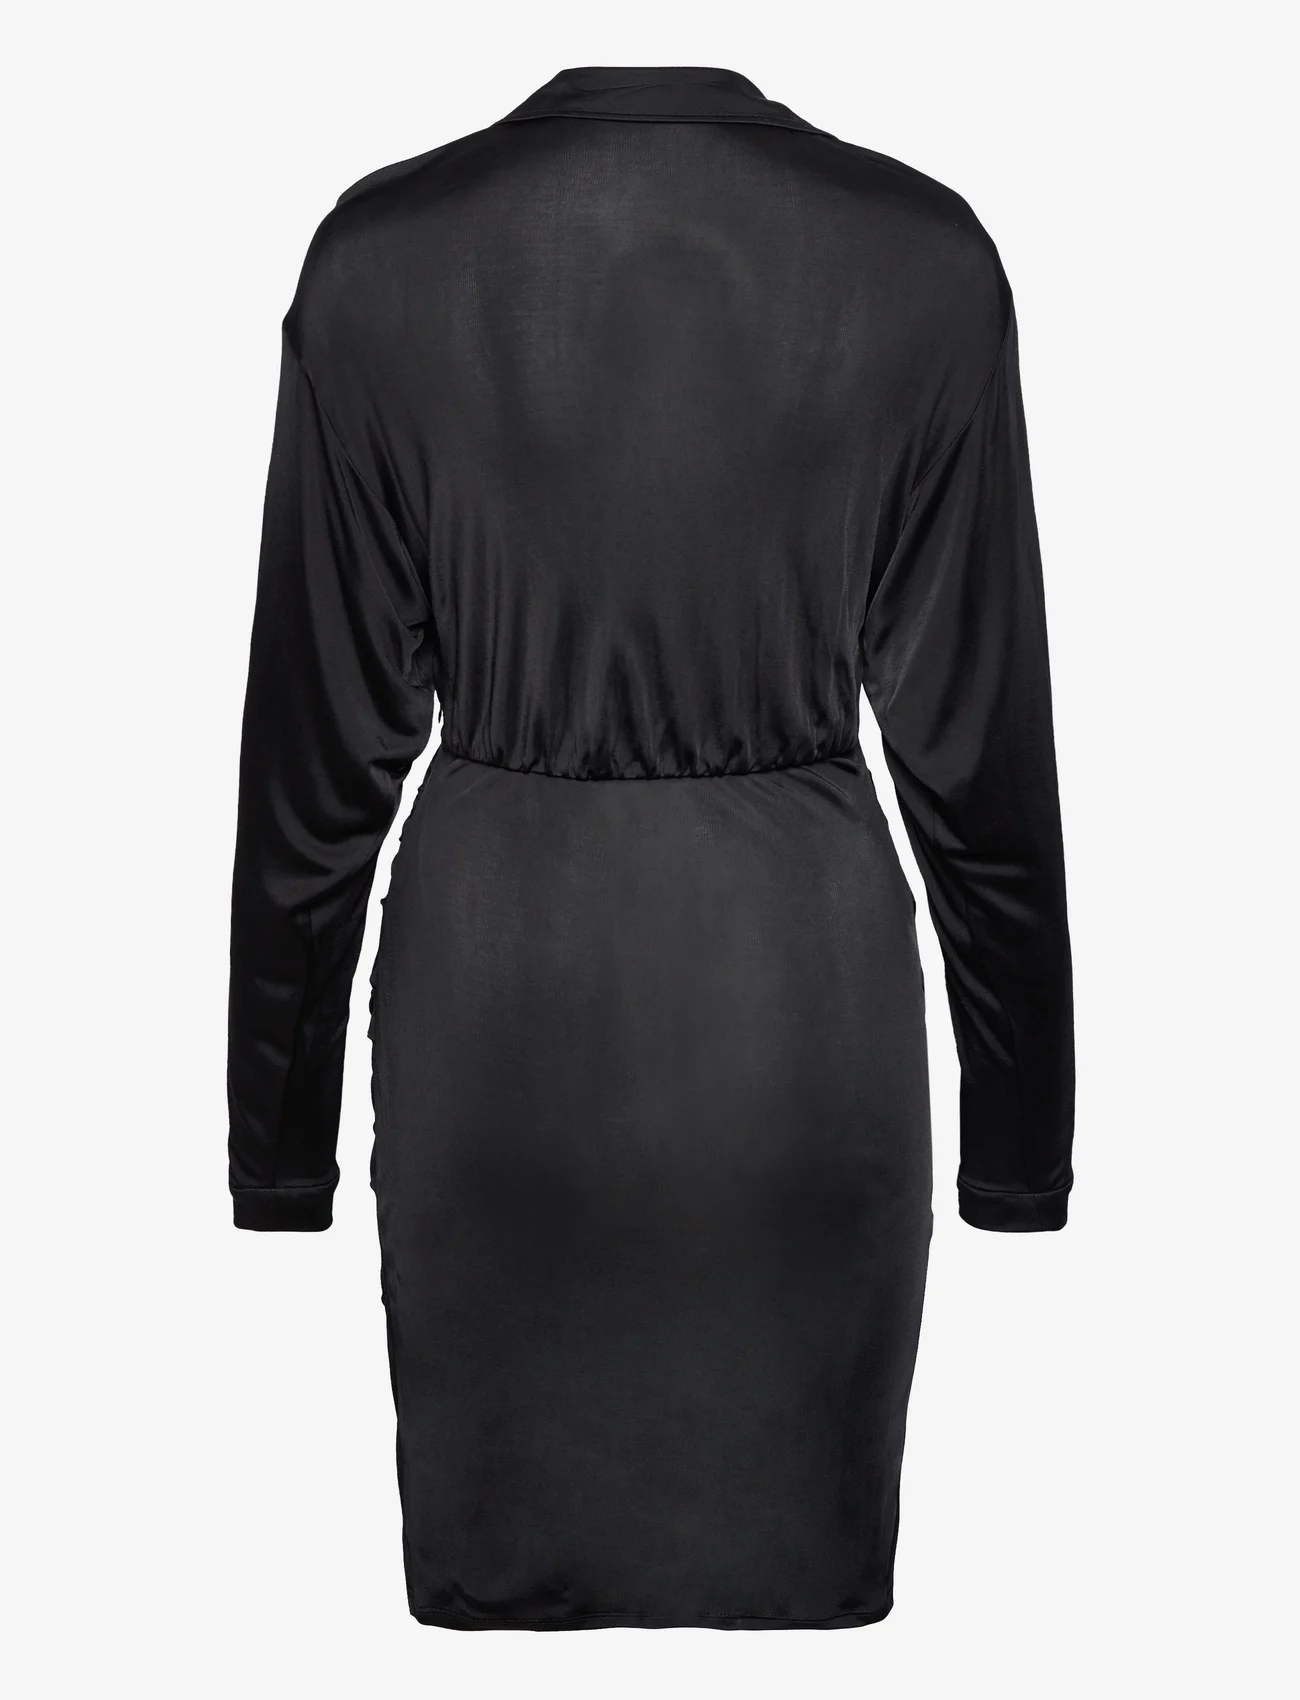 Diane von Furstenberg - DVF TROIAN DRESS - party wear at outlet prices - black - 1